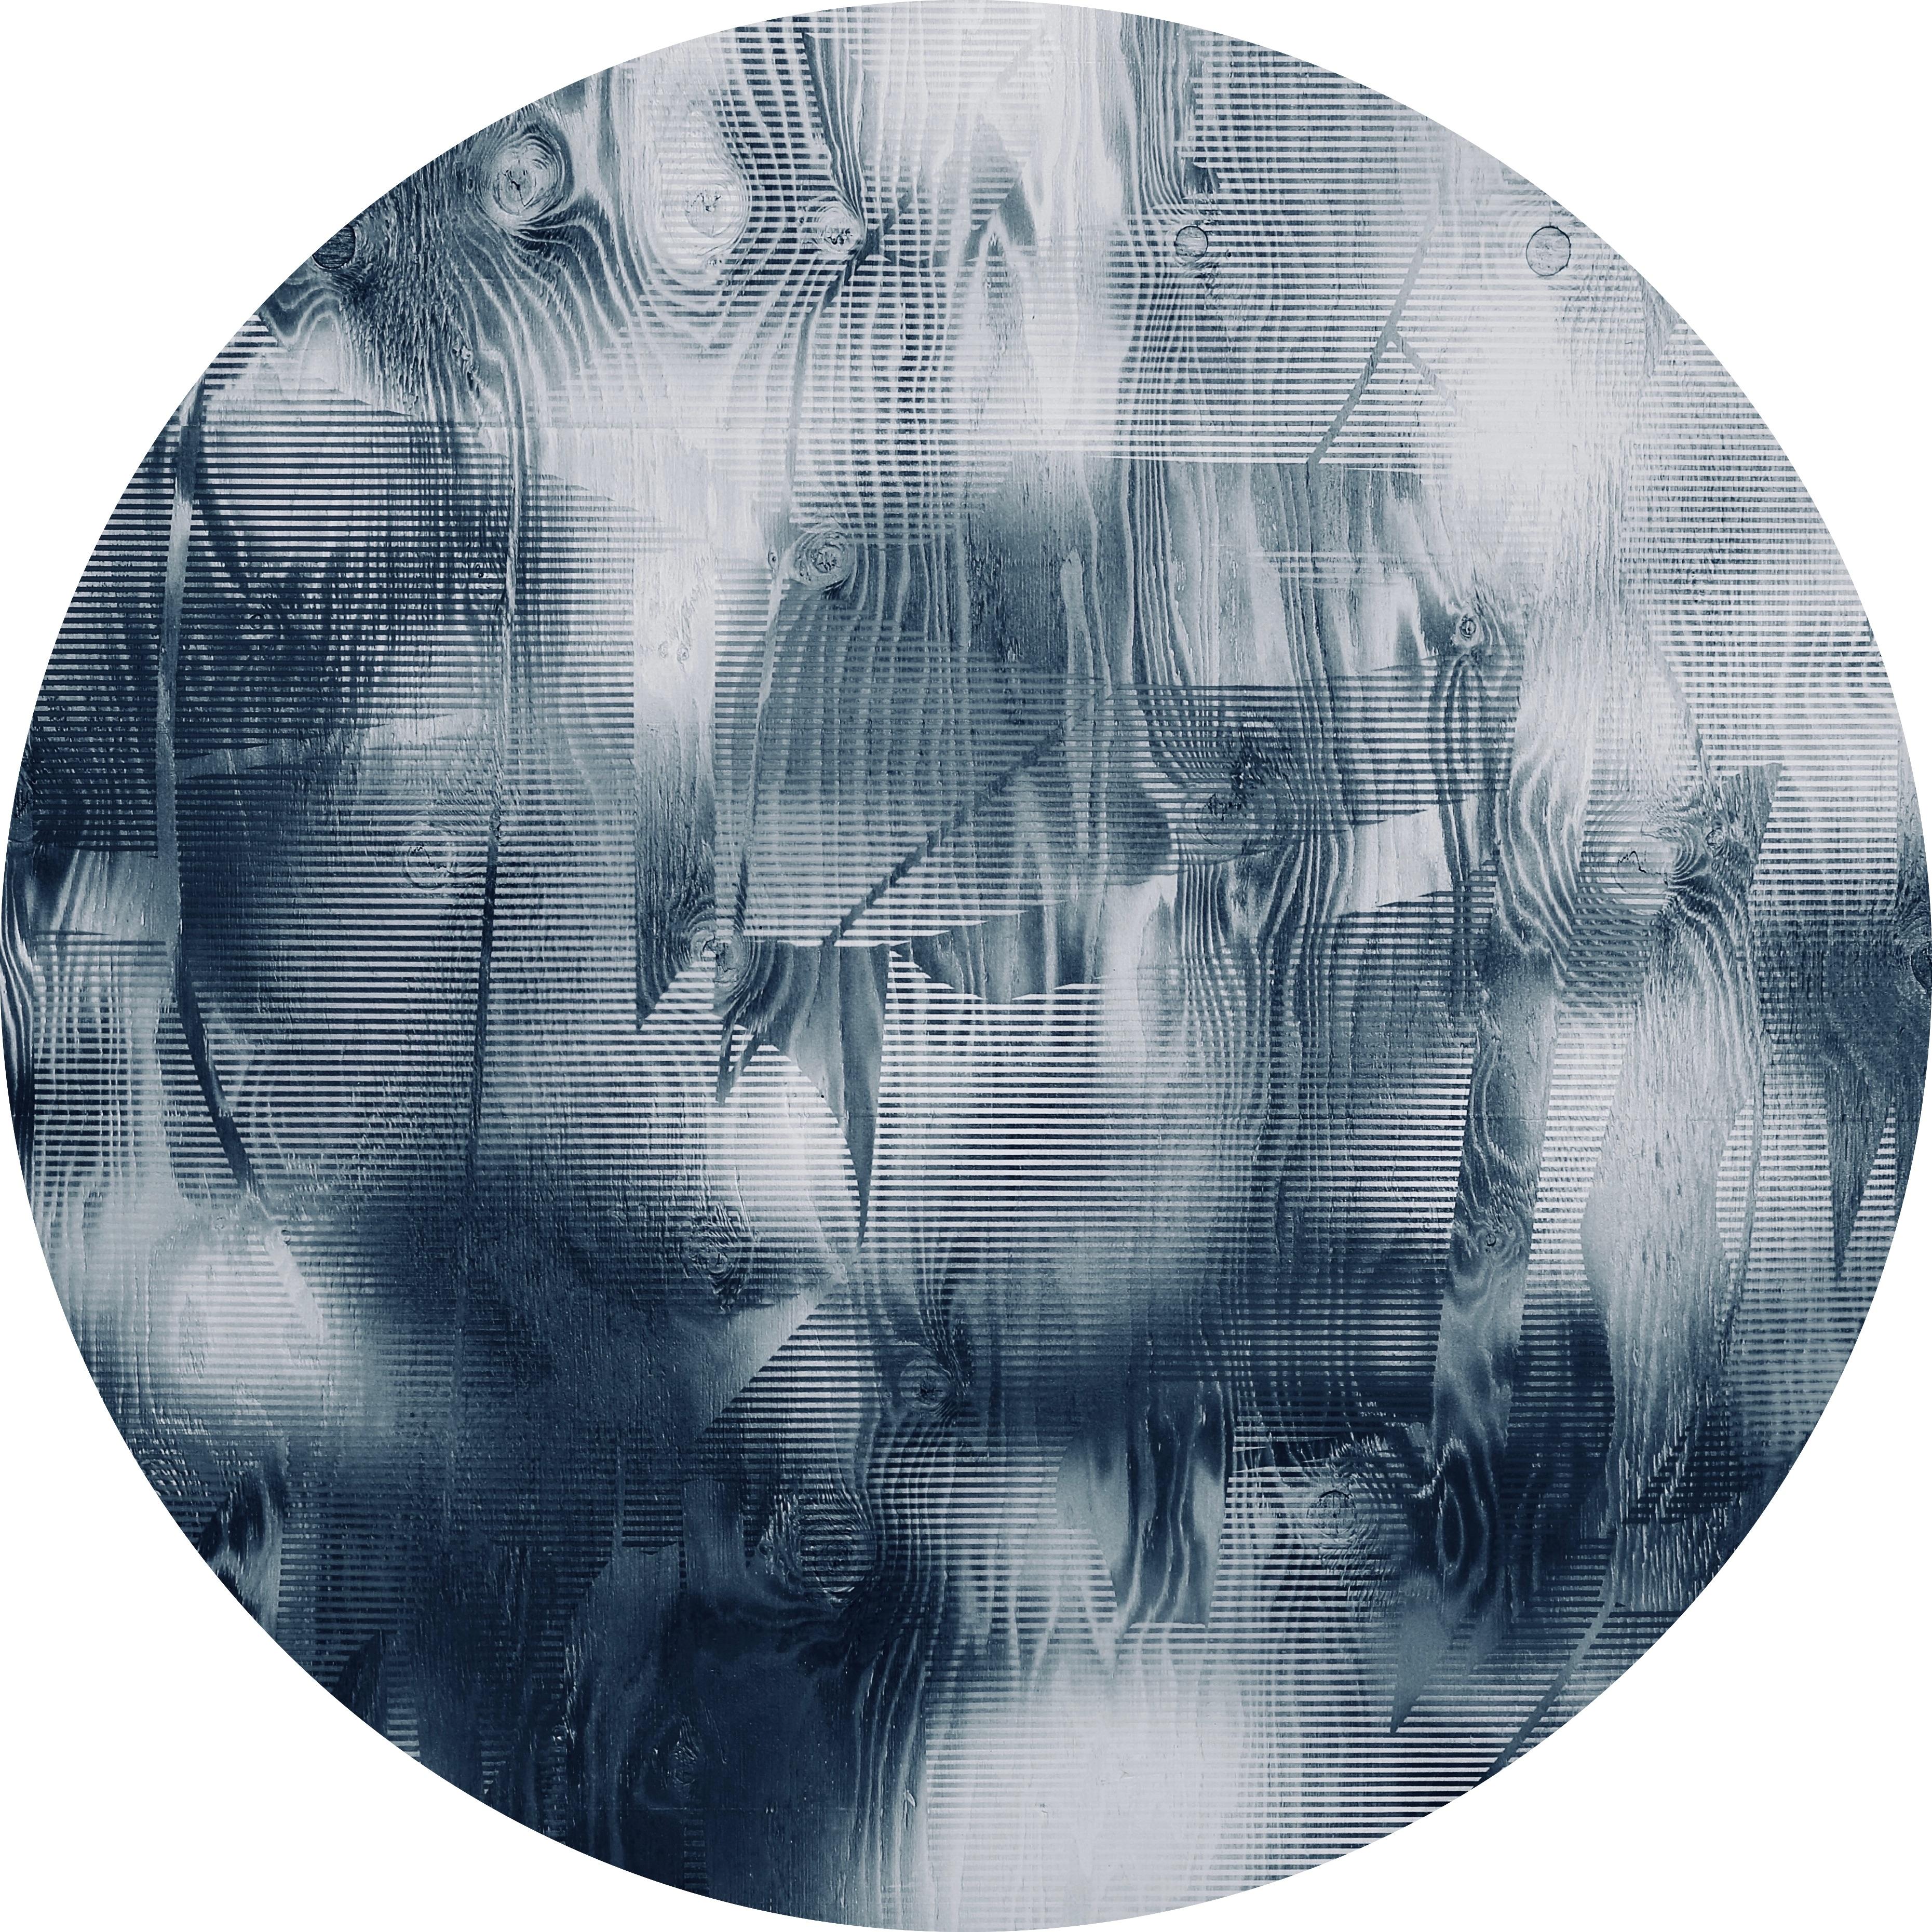 Écran tbd8  (peinture Art déco à grille ronde en jean bleue géométrique abstraite)  - Mixed Media Art de Melisa Taylor Metzger